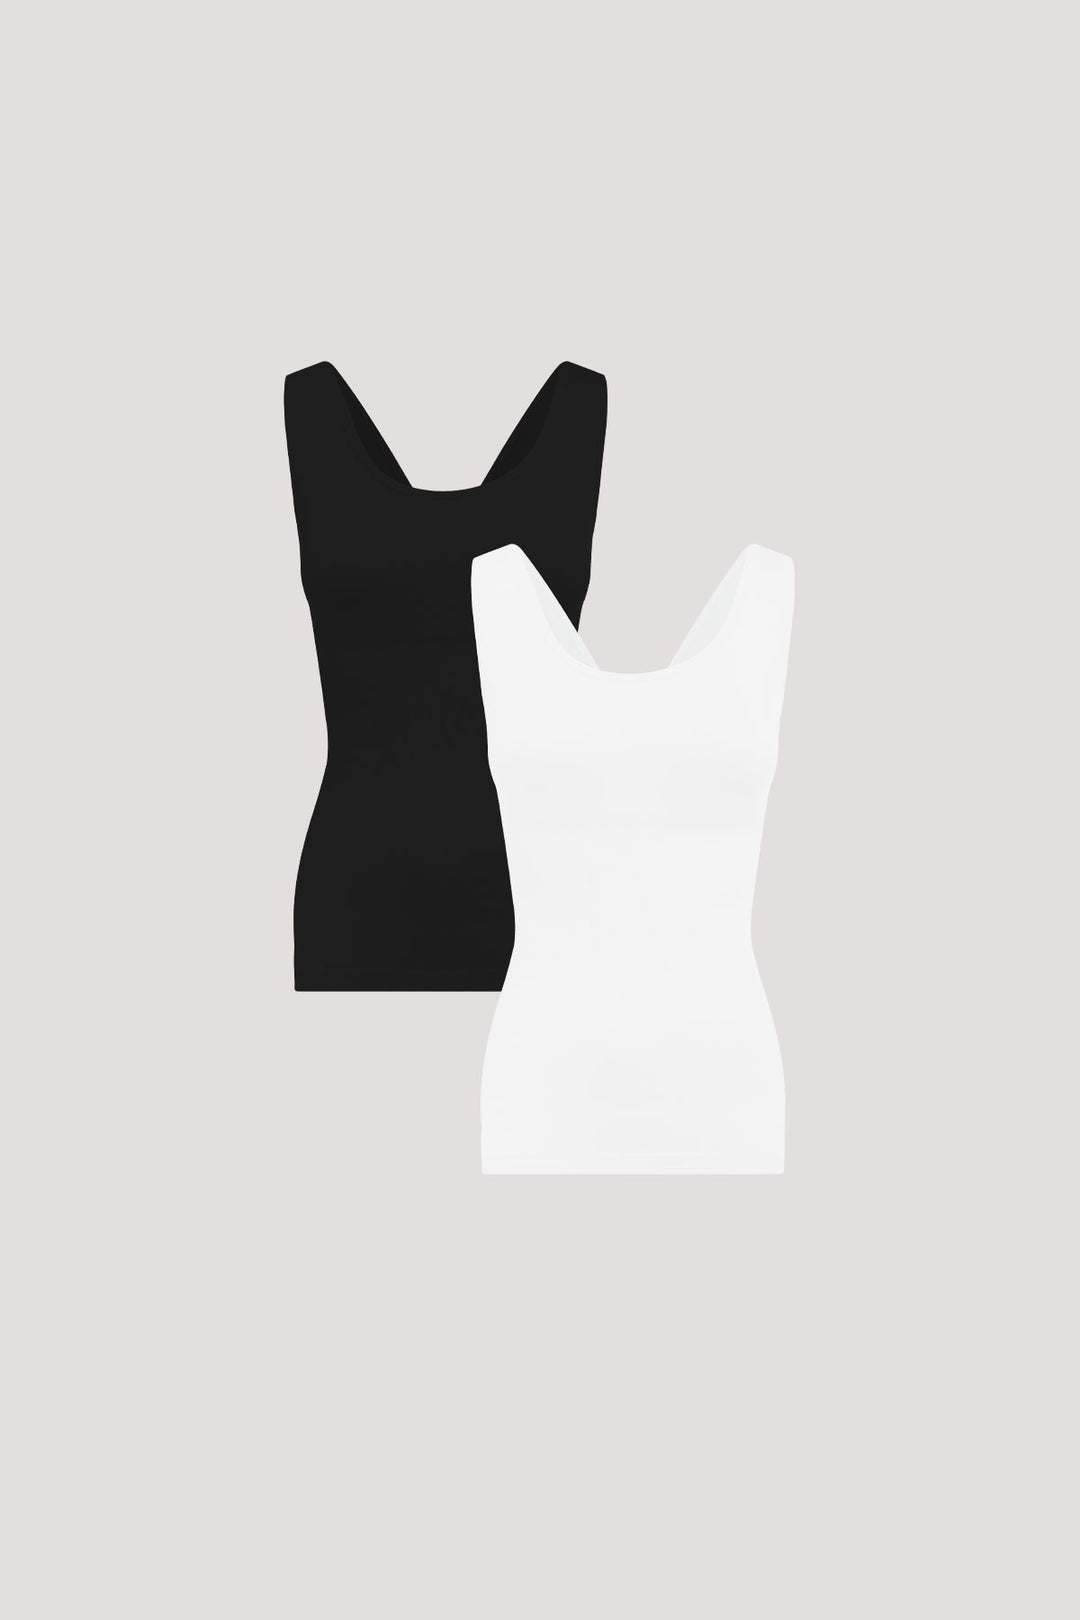 Women's Shaperwear Smoothing Reversible Tank 2 pack I Bella Bodies UK I Black & White